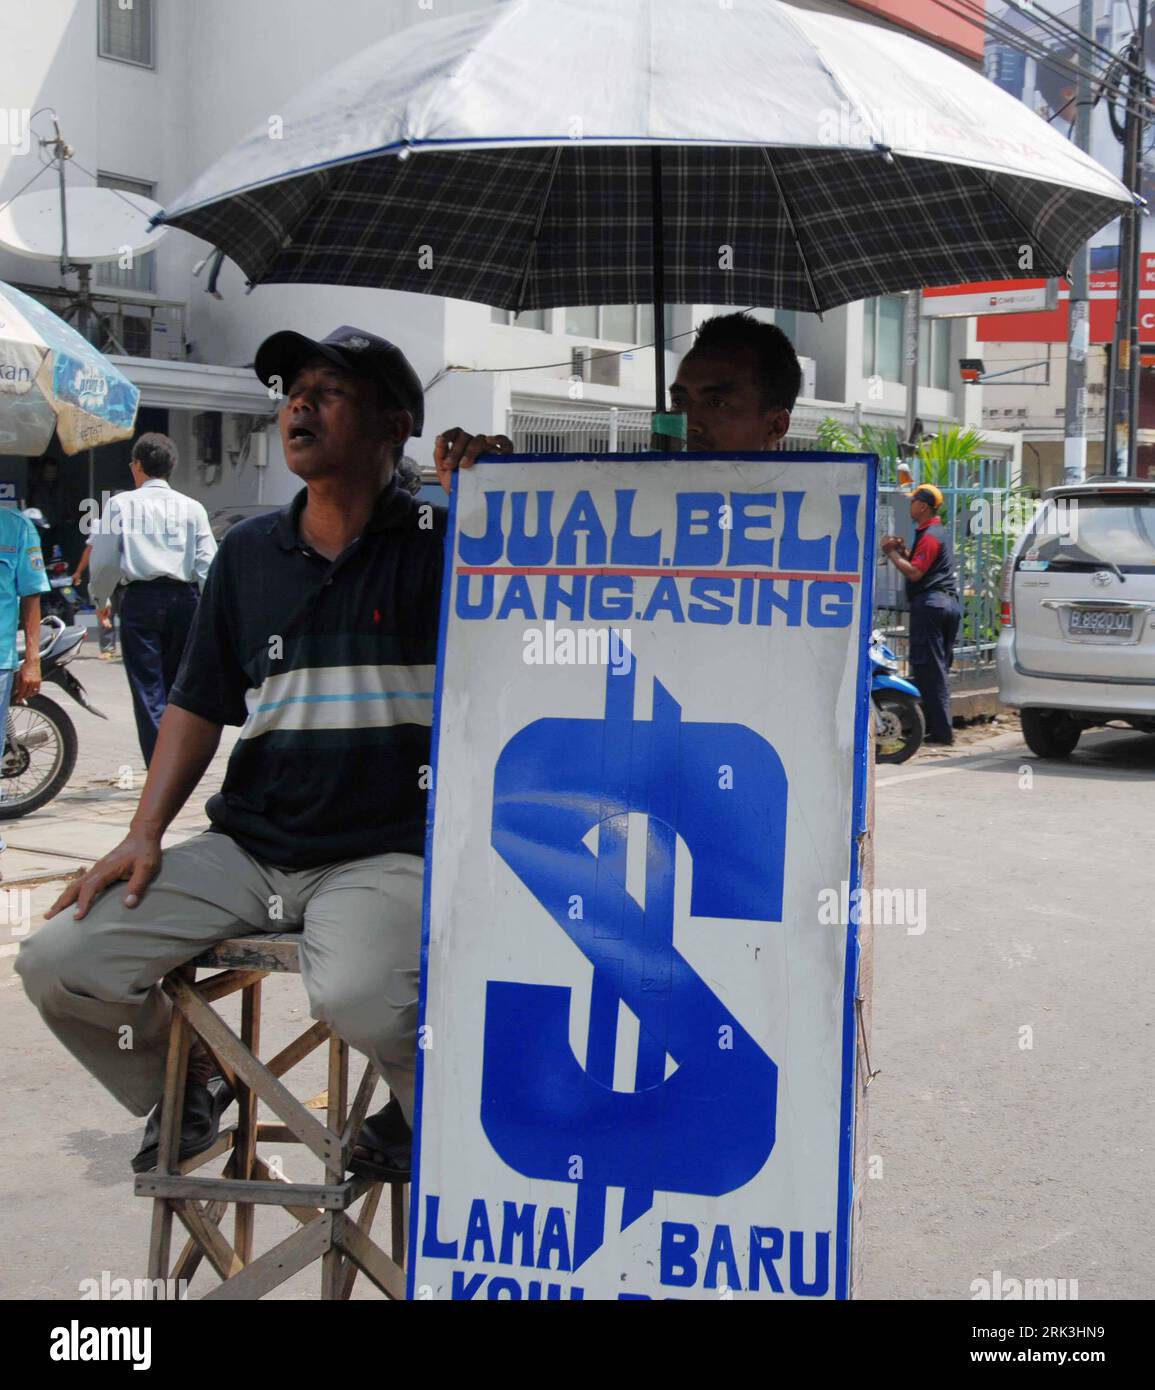 Bildnummer: 53518773 Datum: 08.10.2009 Copyright: imago/Xinhua (091008) -- JAKARTA, 8. Oktober 2009 (Xinhua) -- Ein Geldwechsler wartet auf Kunden auf einer Straße von Jakarta, Captial of Indonesia, 8. Oktober 2009. Die indonesische Rupiah ist seit dem 3. Oktober 2008 gegenüber dem US-Dollar um 15 Prozent gestiegen, als Folge der wirtschaftlichen Impulse der indonesischen Regierung und der Aussichten auf eine wirtschaftliche Erholung. (Xinhua/Yue Yuewei) (msq) (1)INDONESIEN-RUPIAH-US-DOLLAR-WECHSELKURSANSTIEG PUBLICATIONxNOTxINxCHN Wirtschaft Wechsel Devisen Straße Kbdig xdp 2009 Quadrat Bildnummer 53518773 Datum 08 10 2009 C Stockfoto